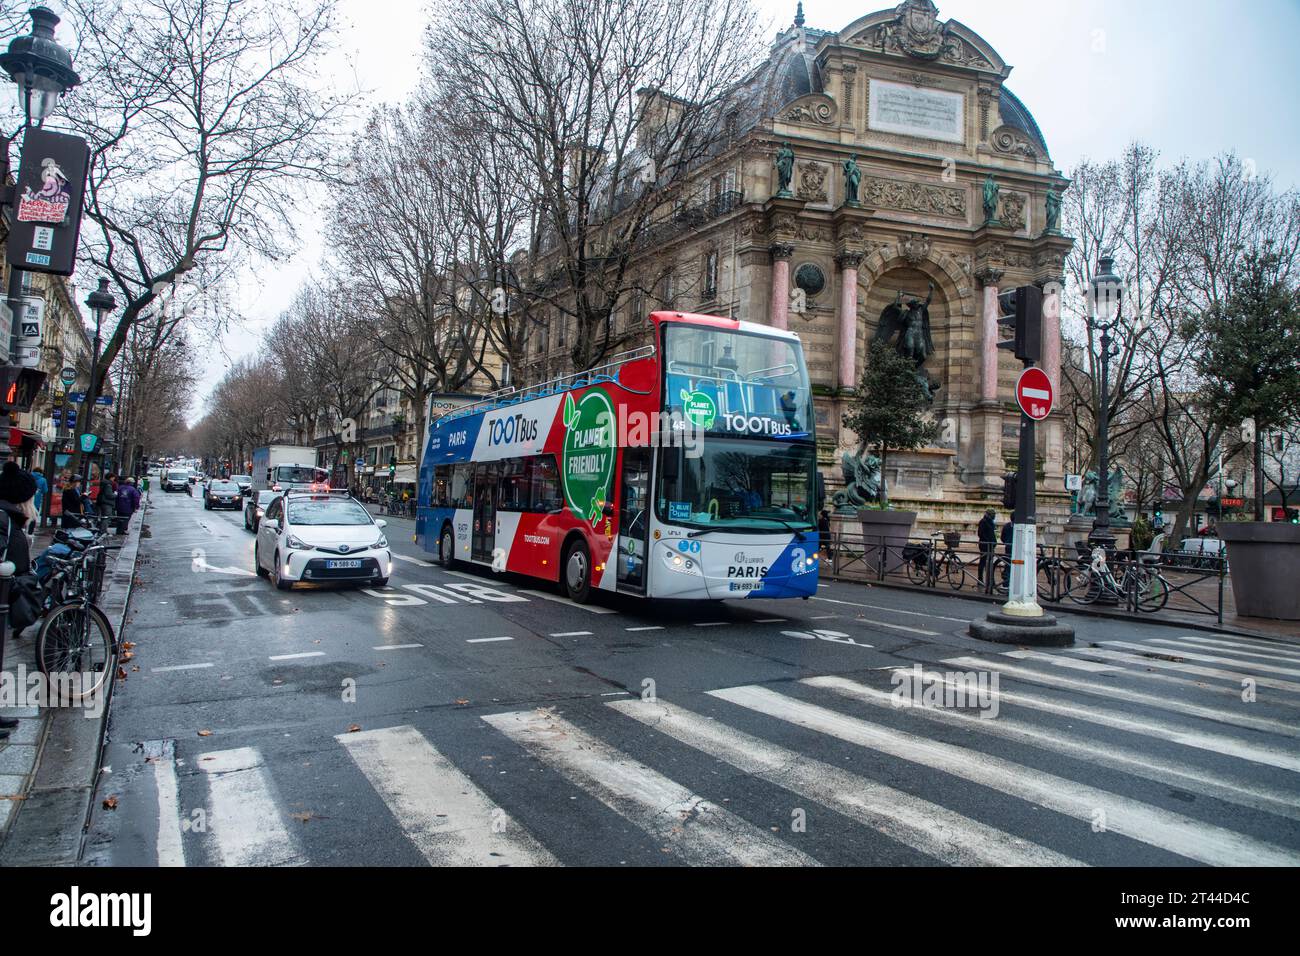 Hop on hop off, Toot bus, bus touristique sur la route à Paris France Banque D'Images